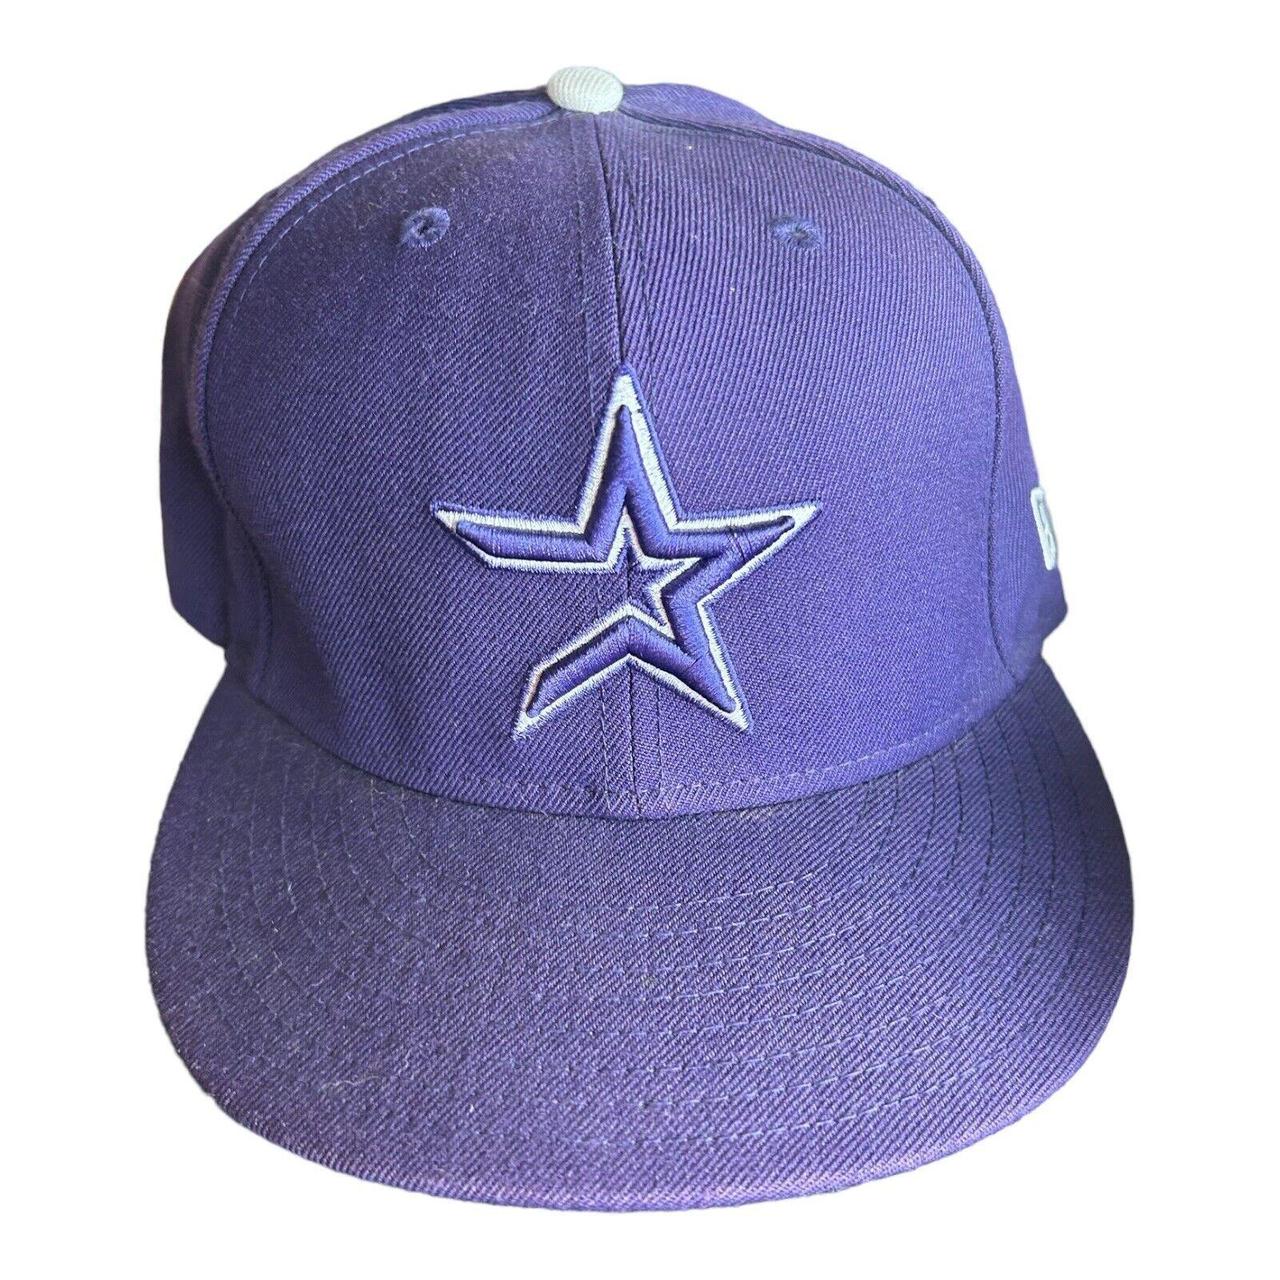 purple dallas cowboys hat